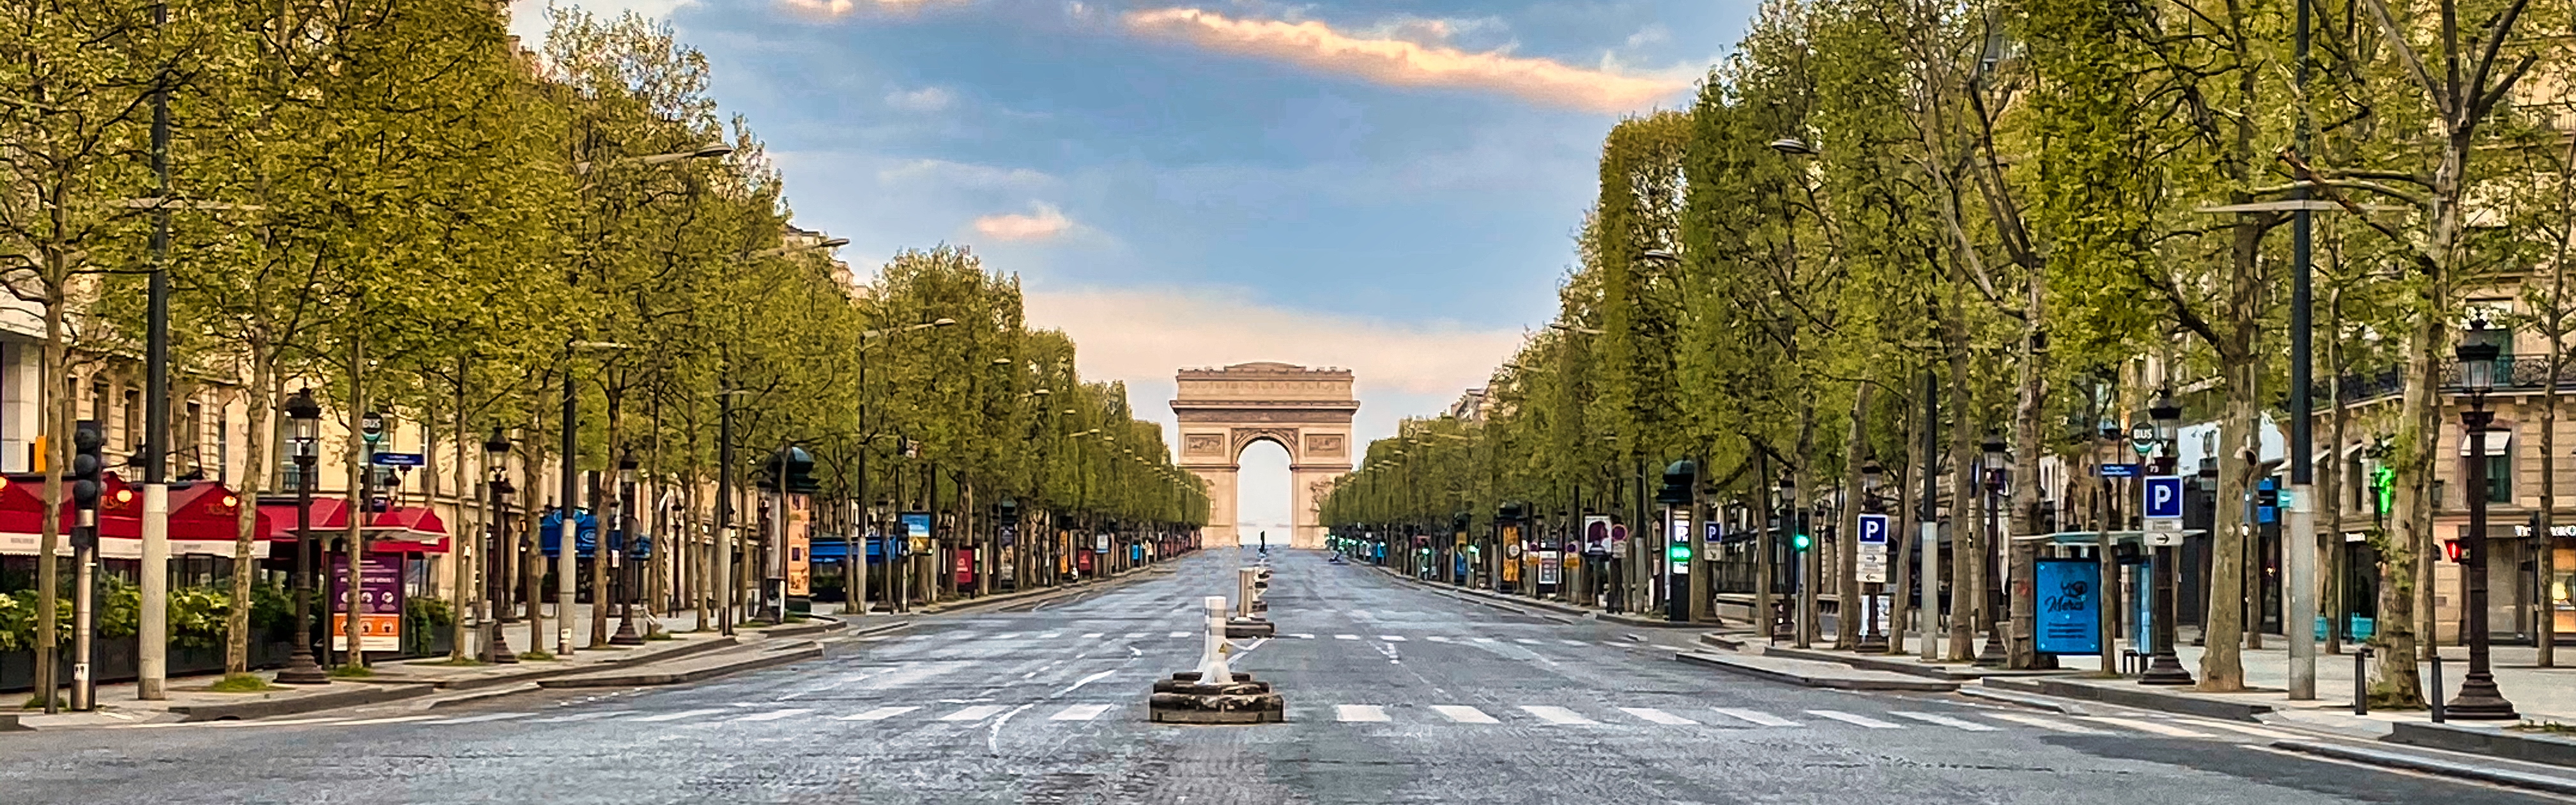 View of the Arc de Triomphe from Champs-Élysées